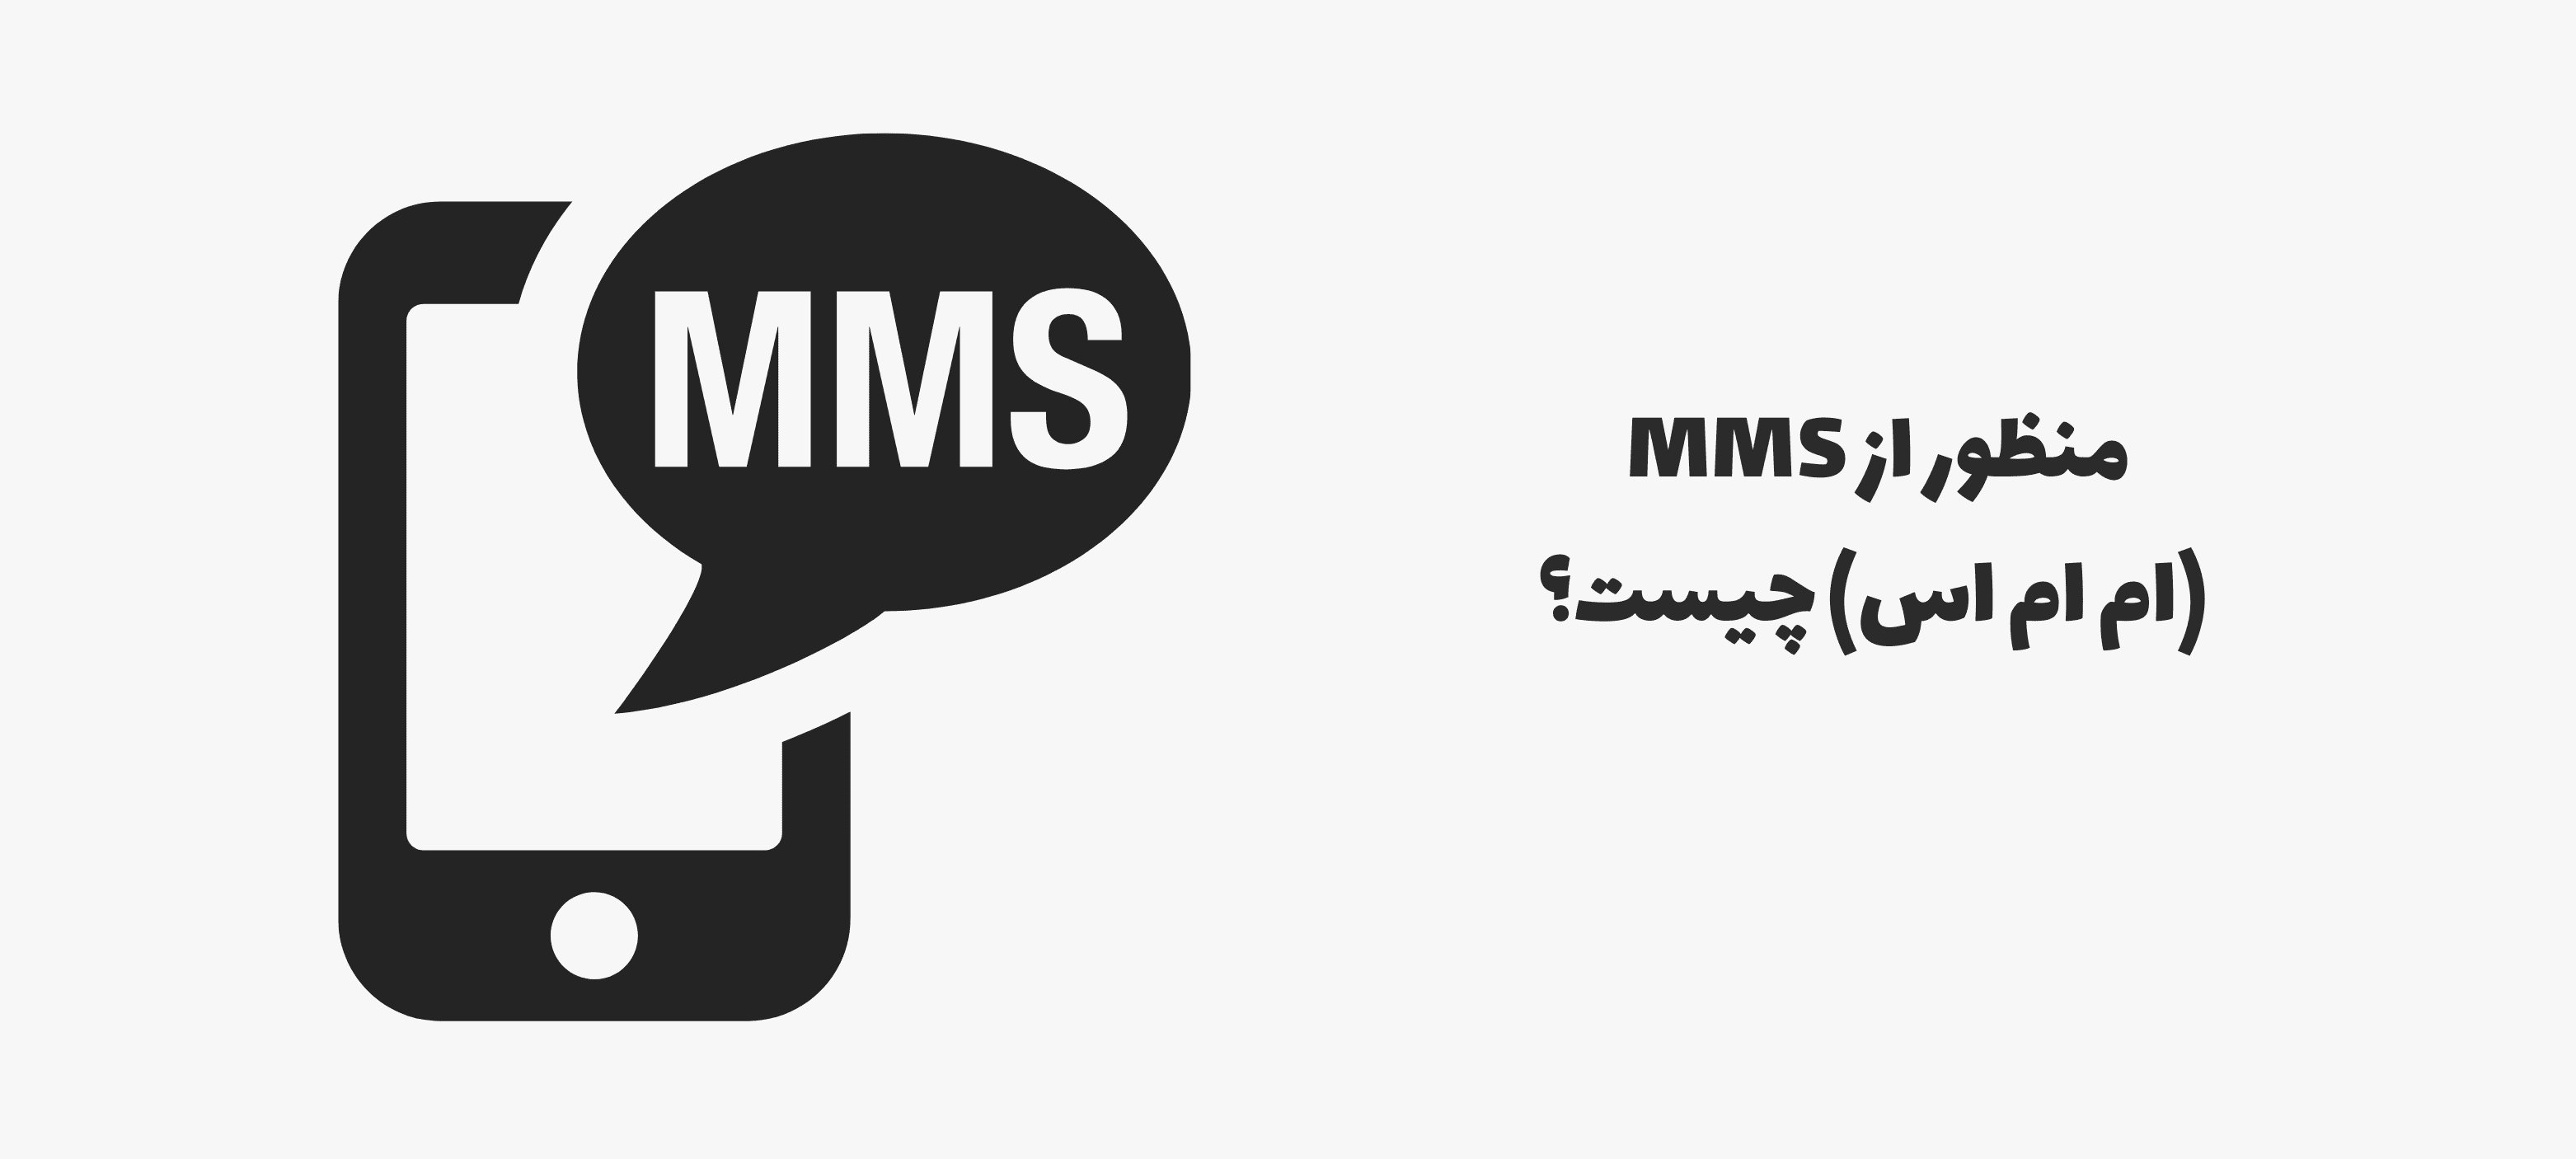 منظور از MMS (ام ام اس) چیست؟